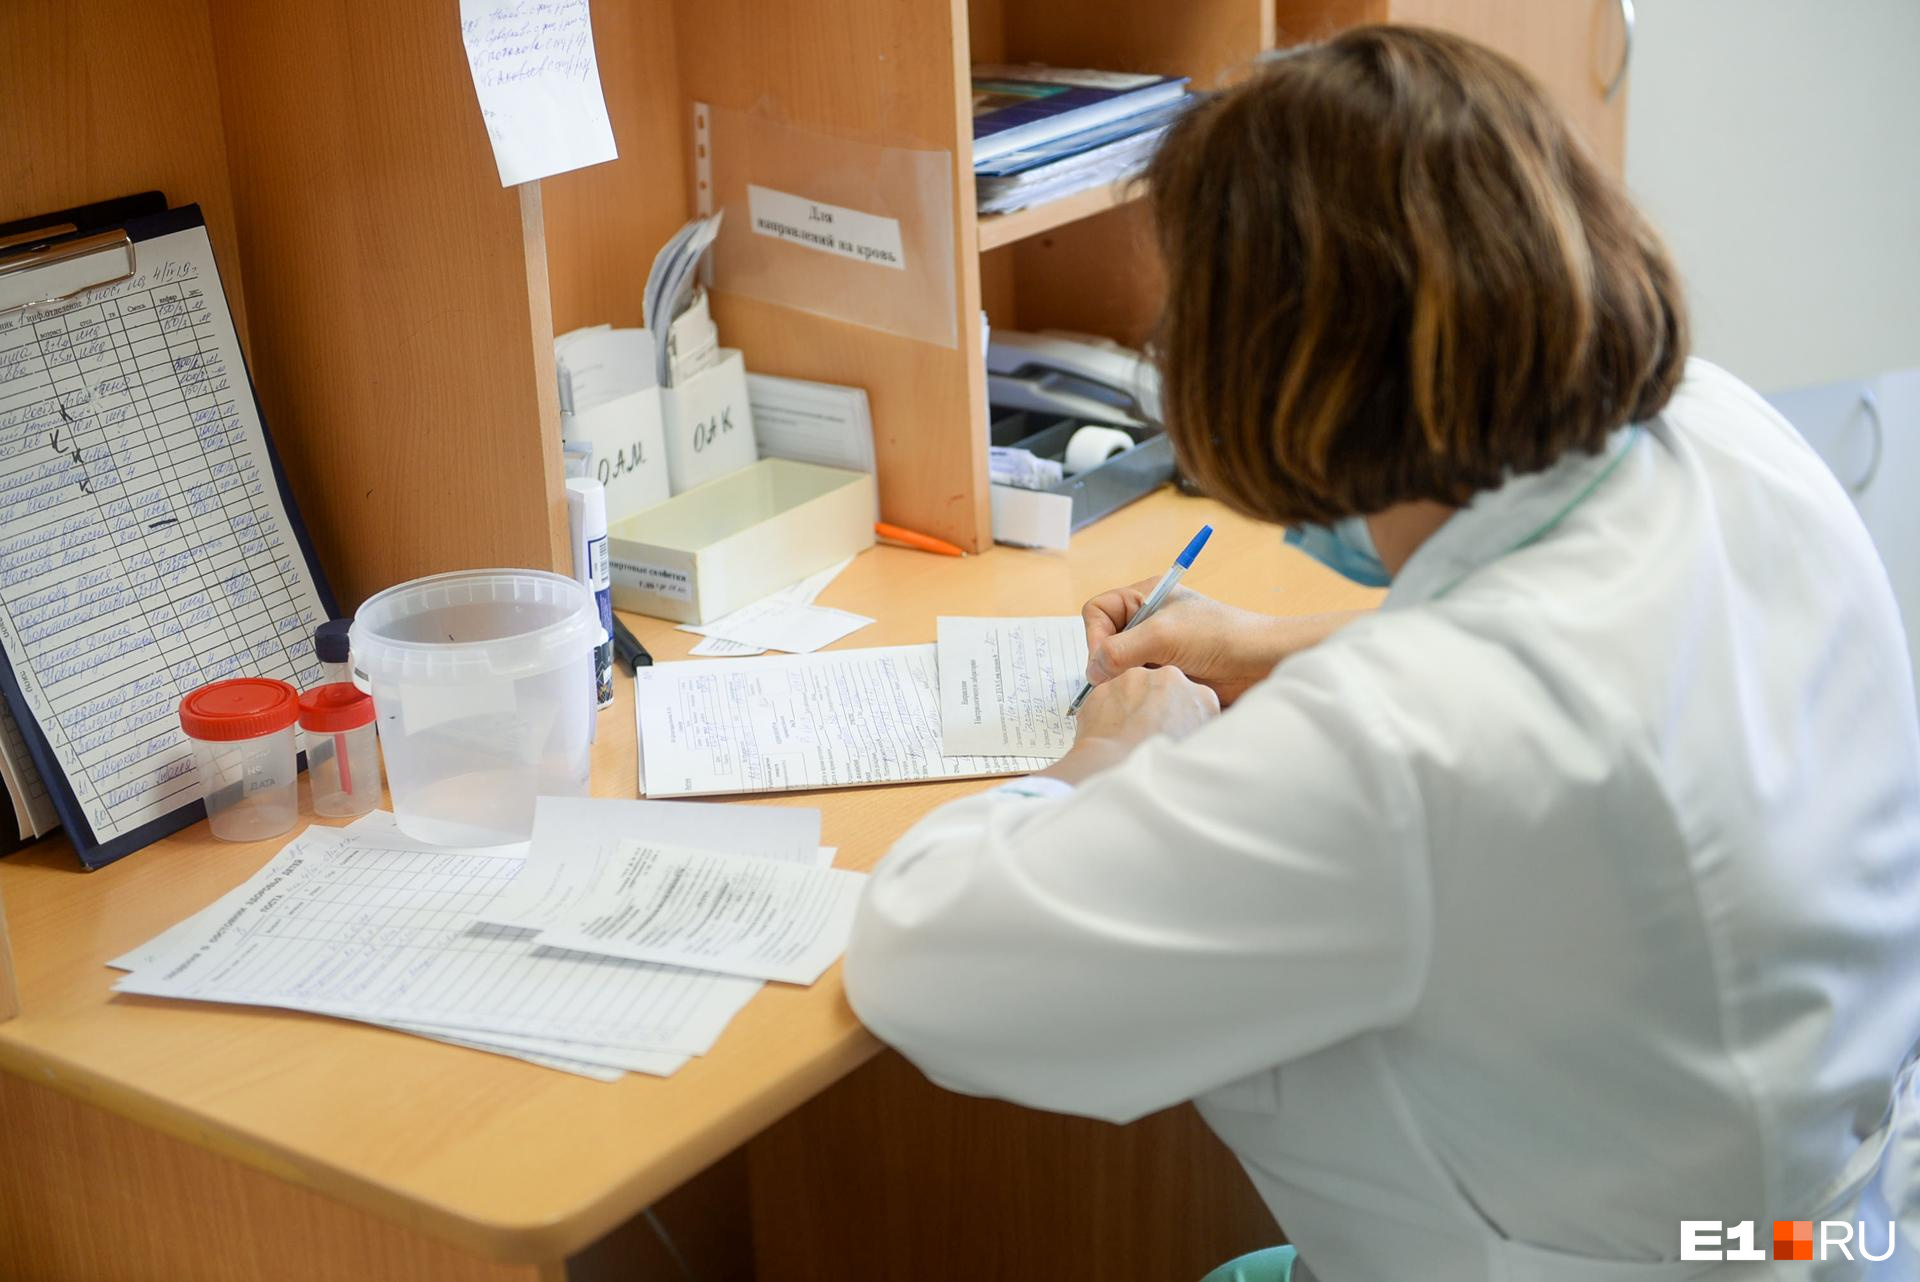 Ольга Сизова стала лучшим врачом функциональной диагностики Забайкалья по версии «Чита.Ру»